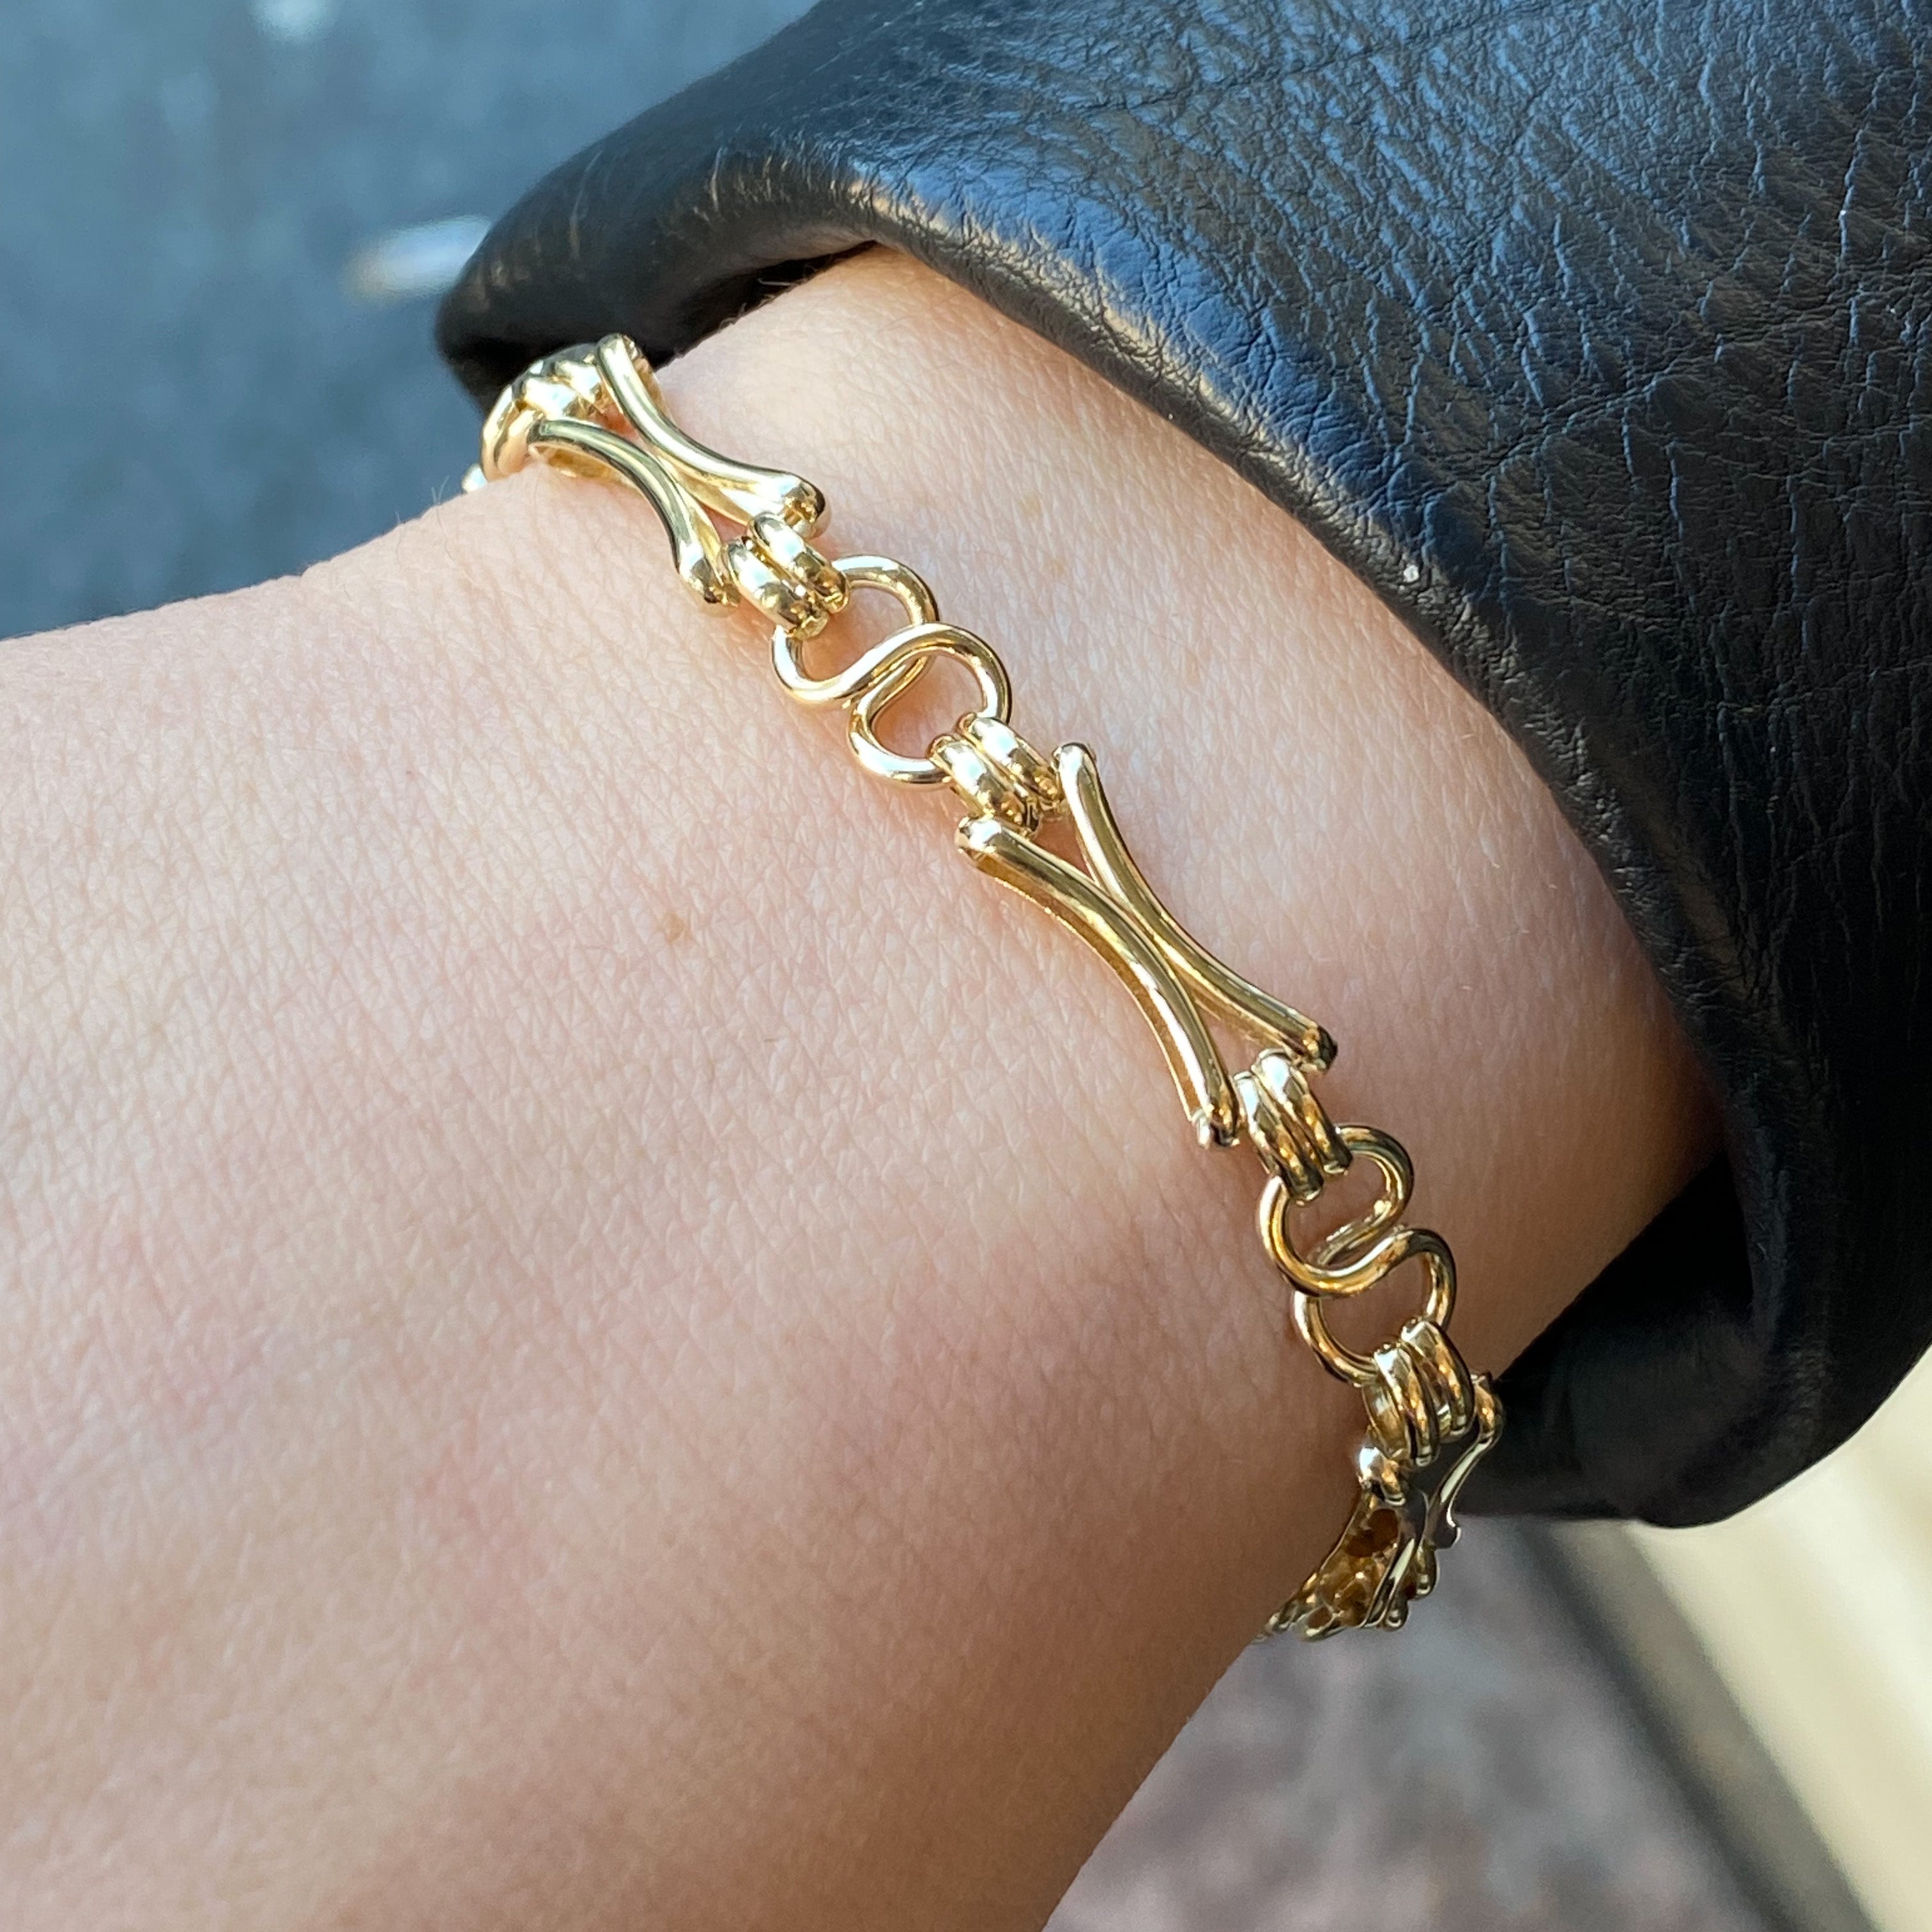 14k Gold cleopatra Tabular Fringe Collar Necklace - Etsy